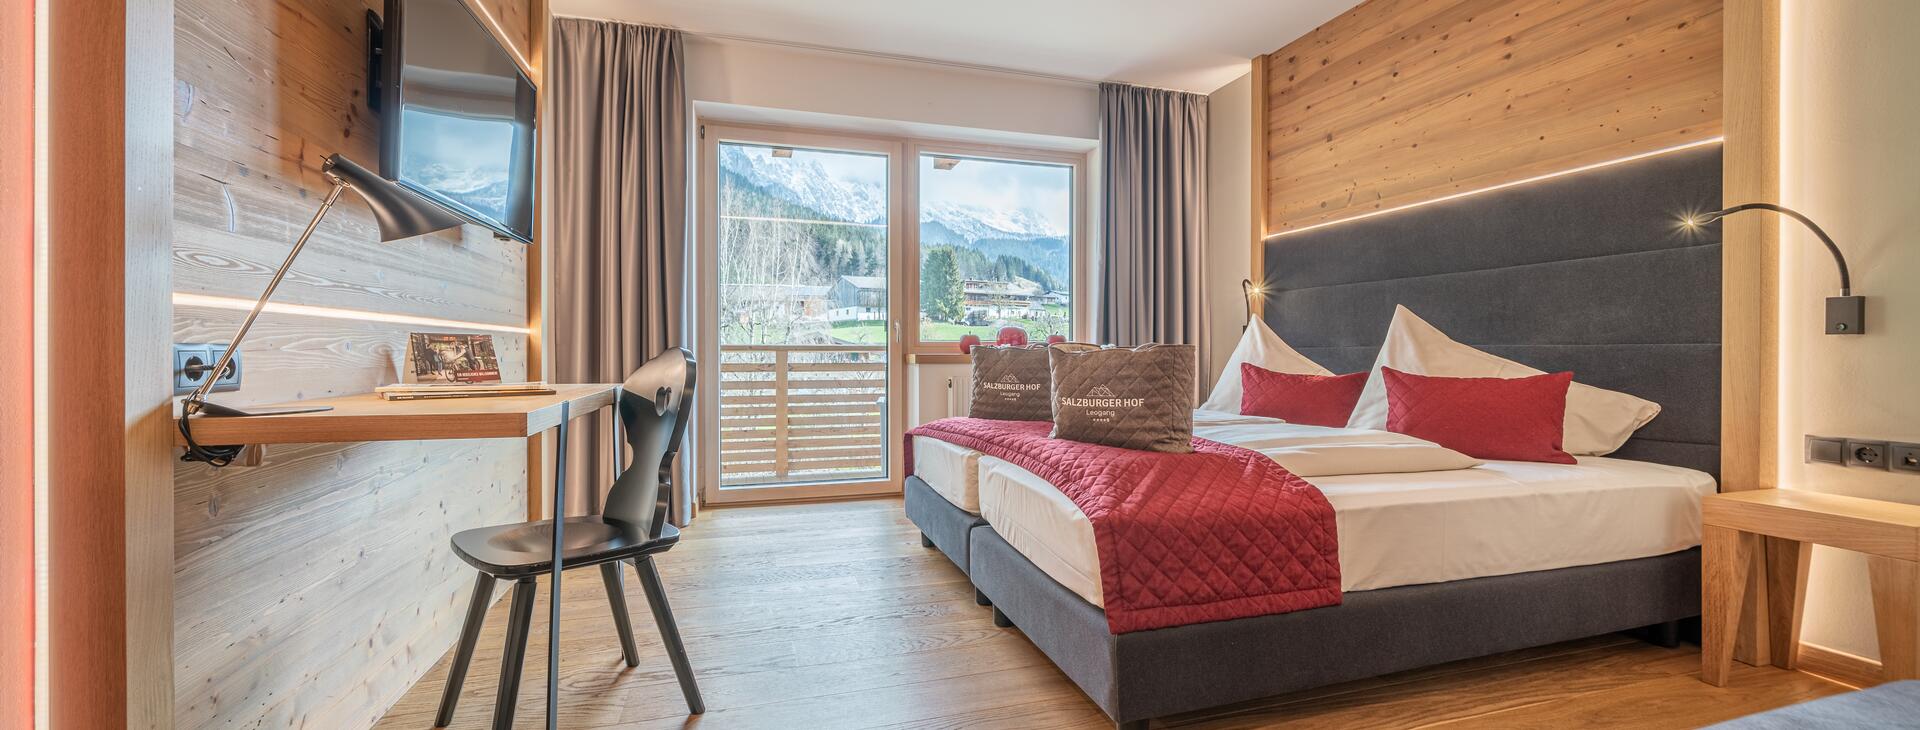 Hotelzimmer in den Alpen